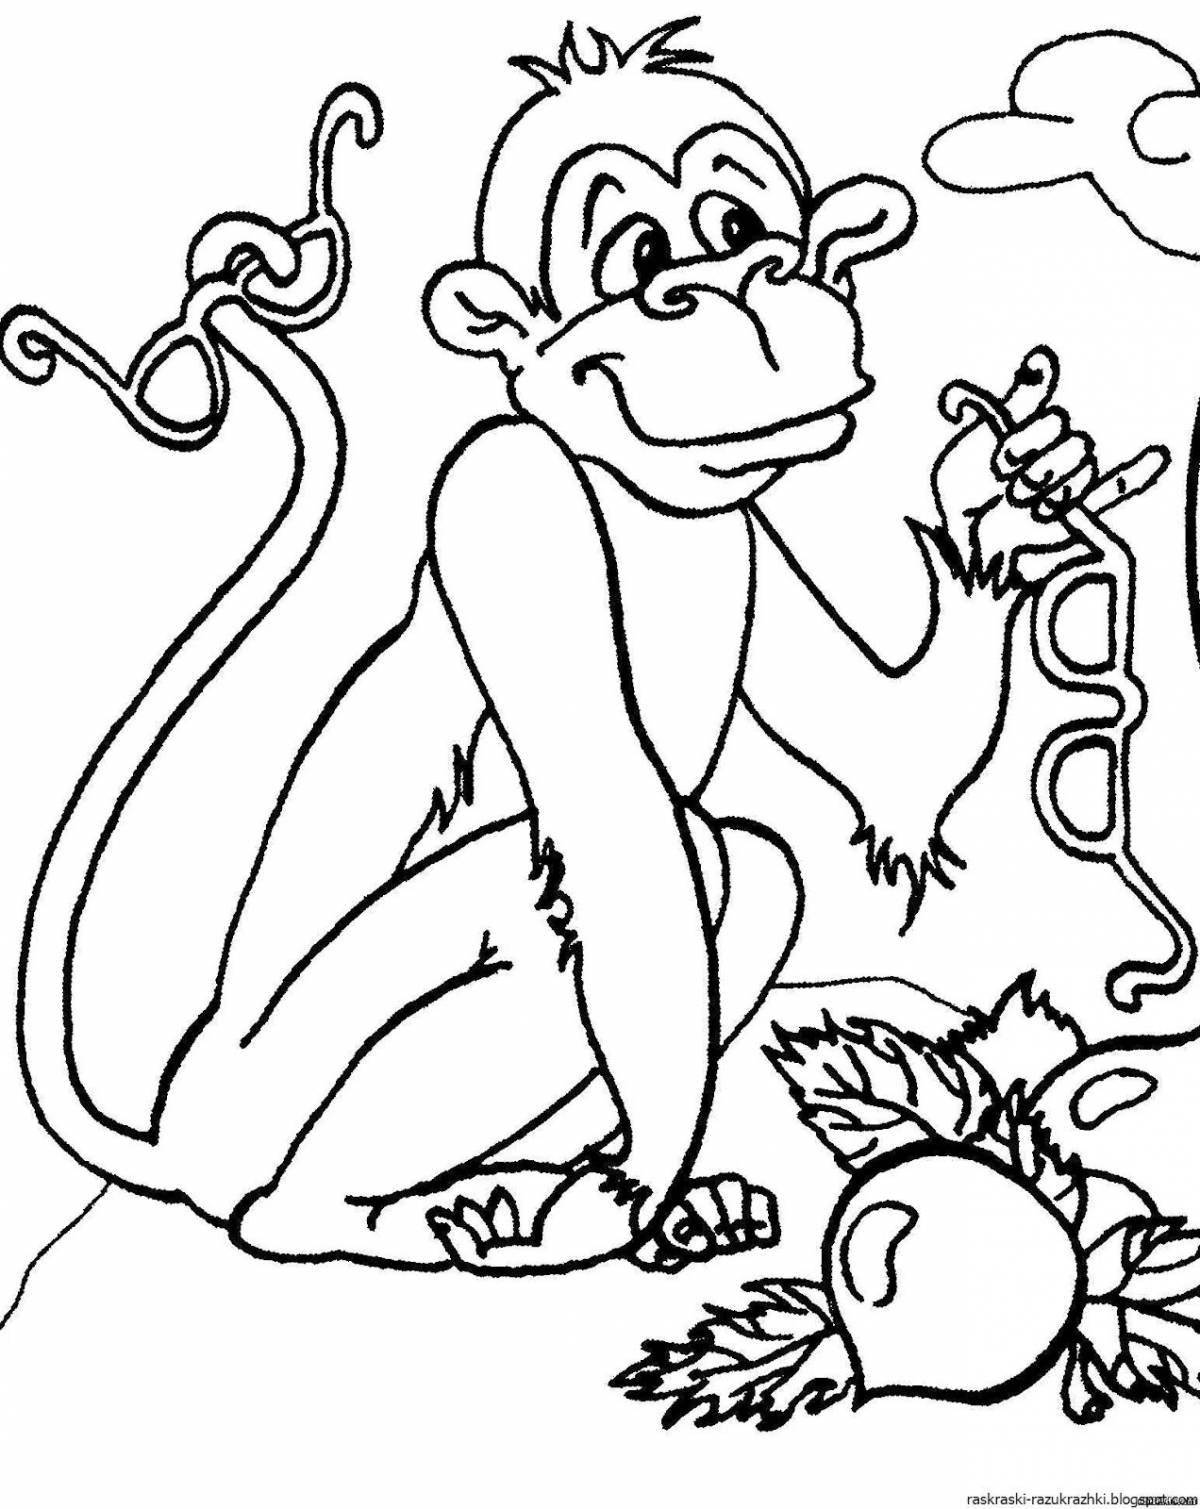 Развлекательная раскраска обезьяна и очки